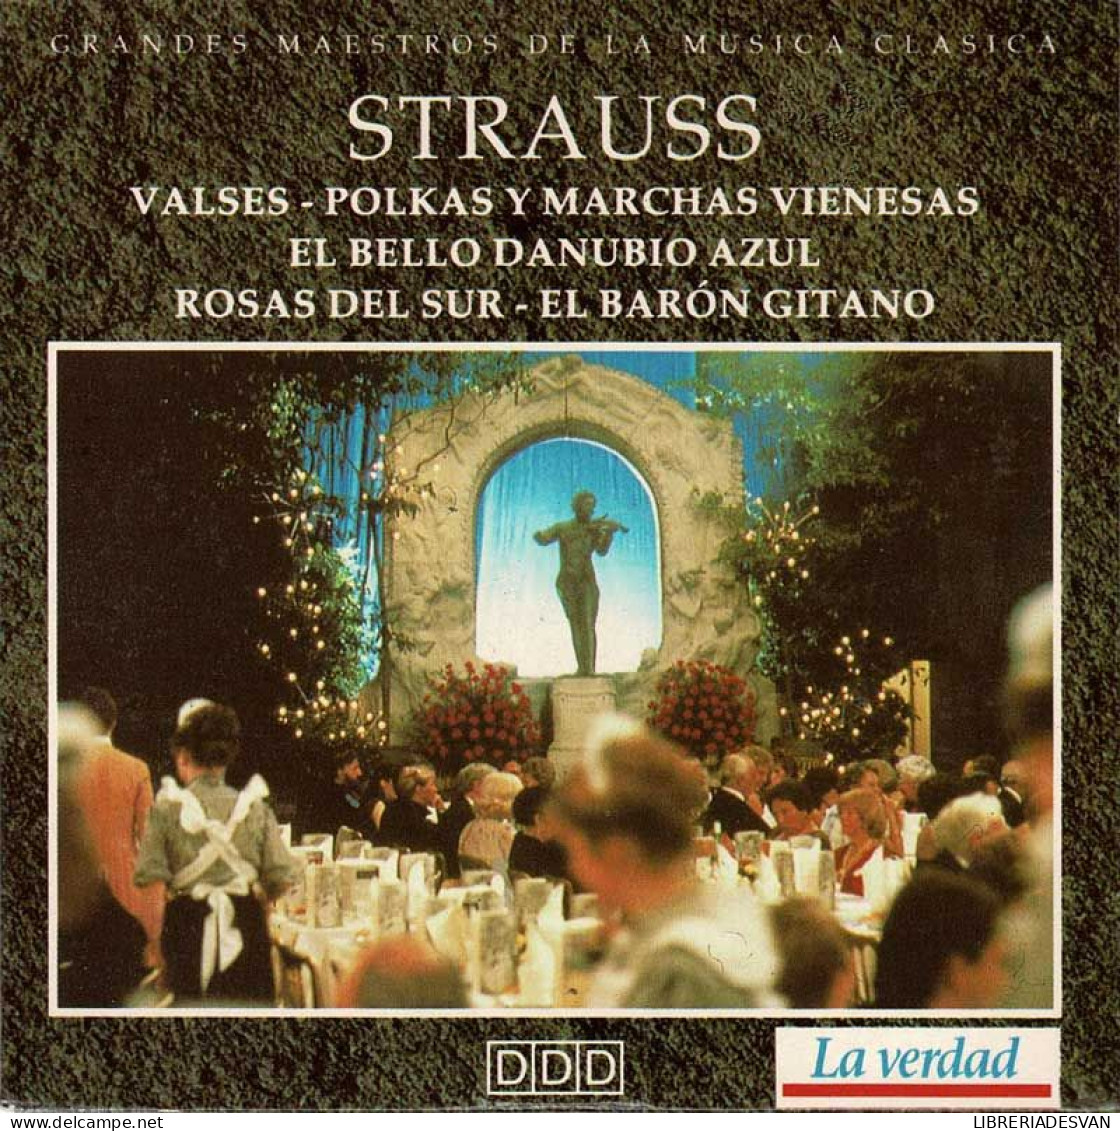 Strauss - Valses. Polkas Y Marchas Vienesas. El Bello Danubio Azul. Rosas Del Sur. El Barón Gitano. CD - Classique